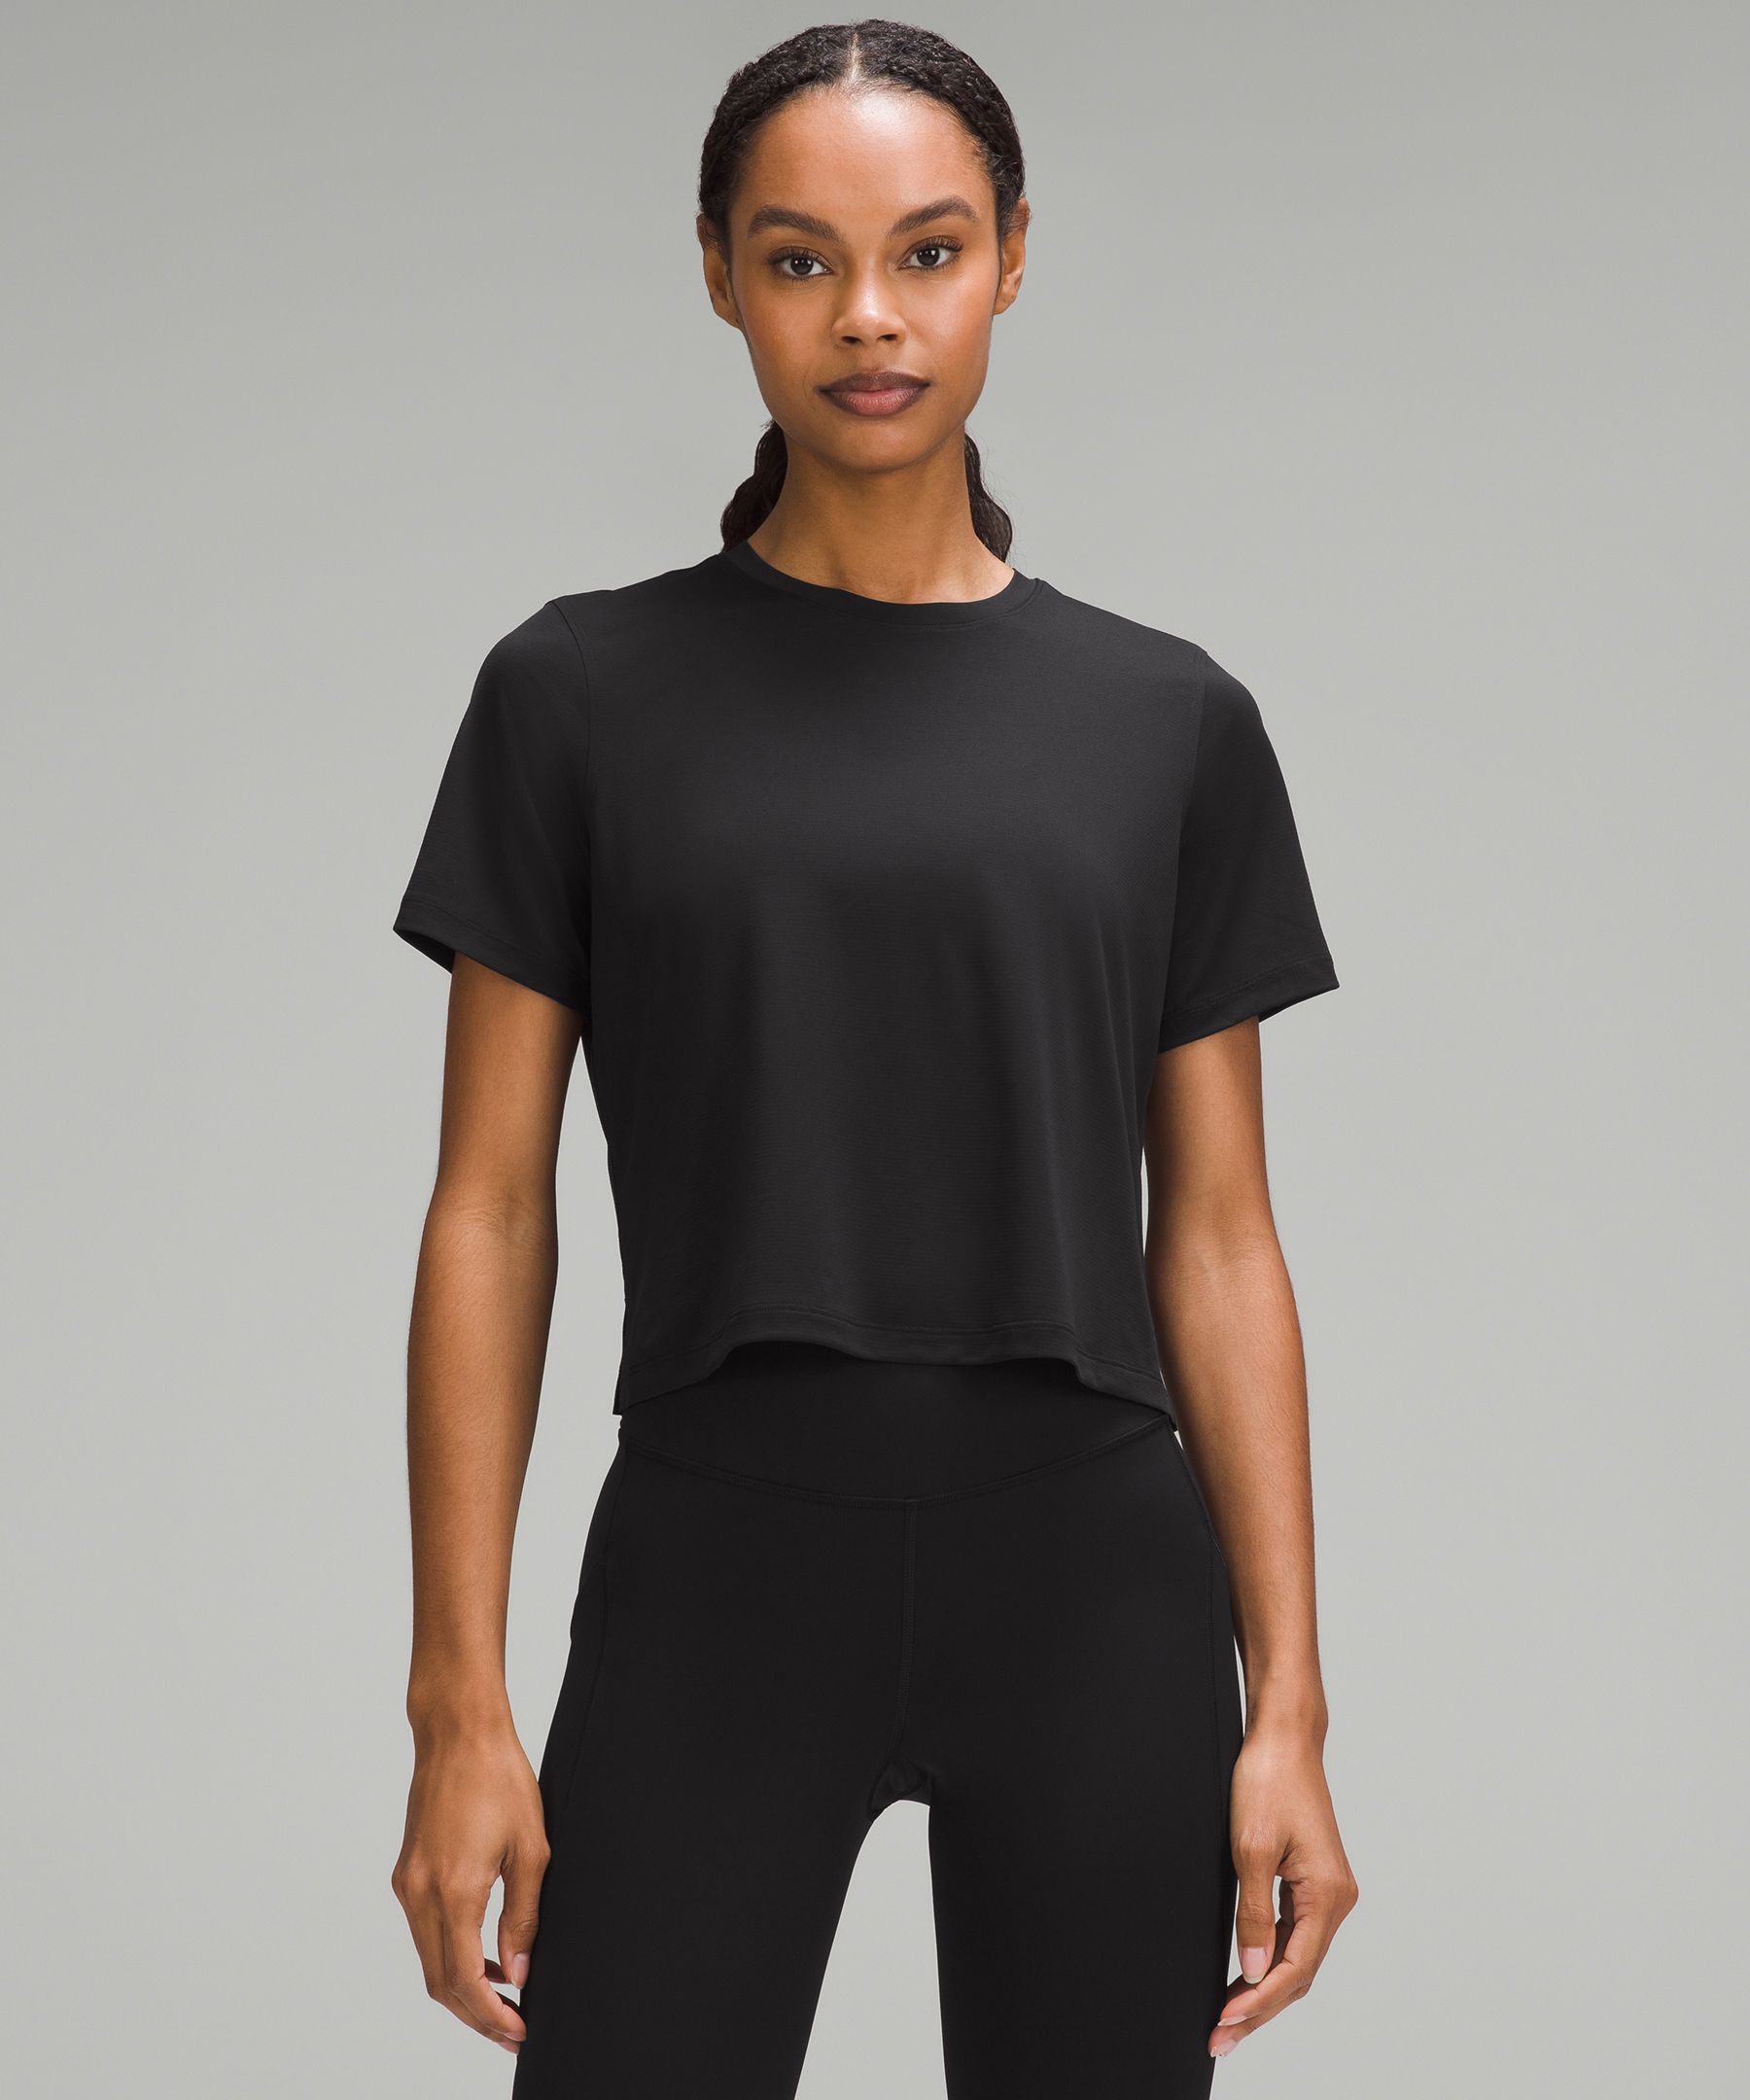 Ultralight Waist-Length T-Shirt | Women's Short Sleeve Shirts & Tee's